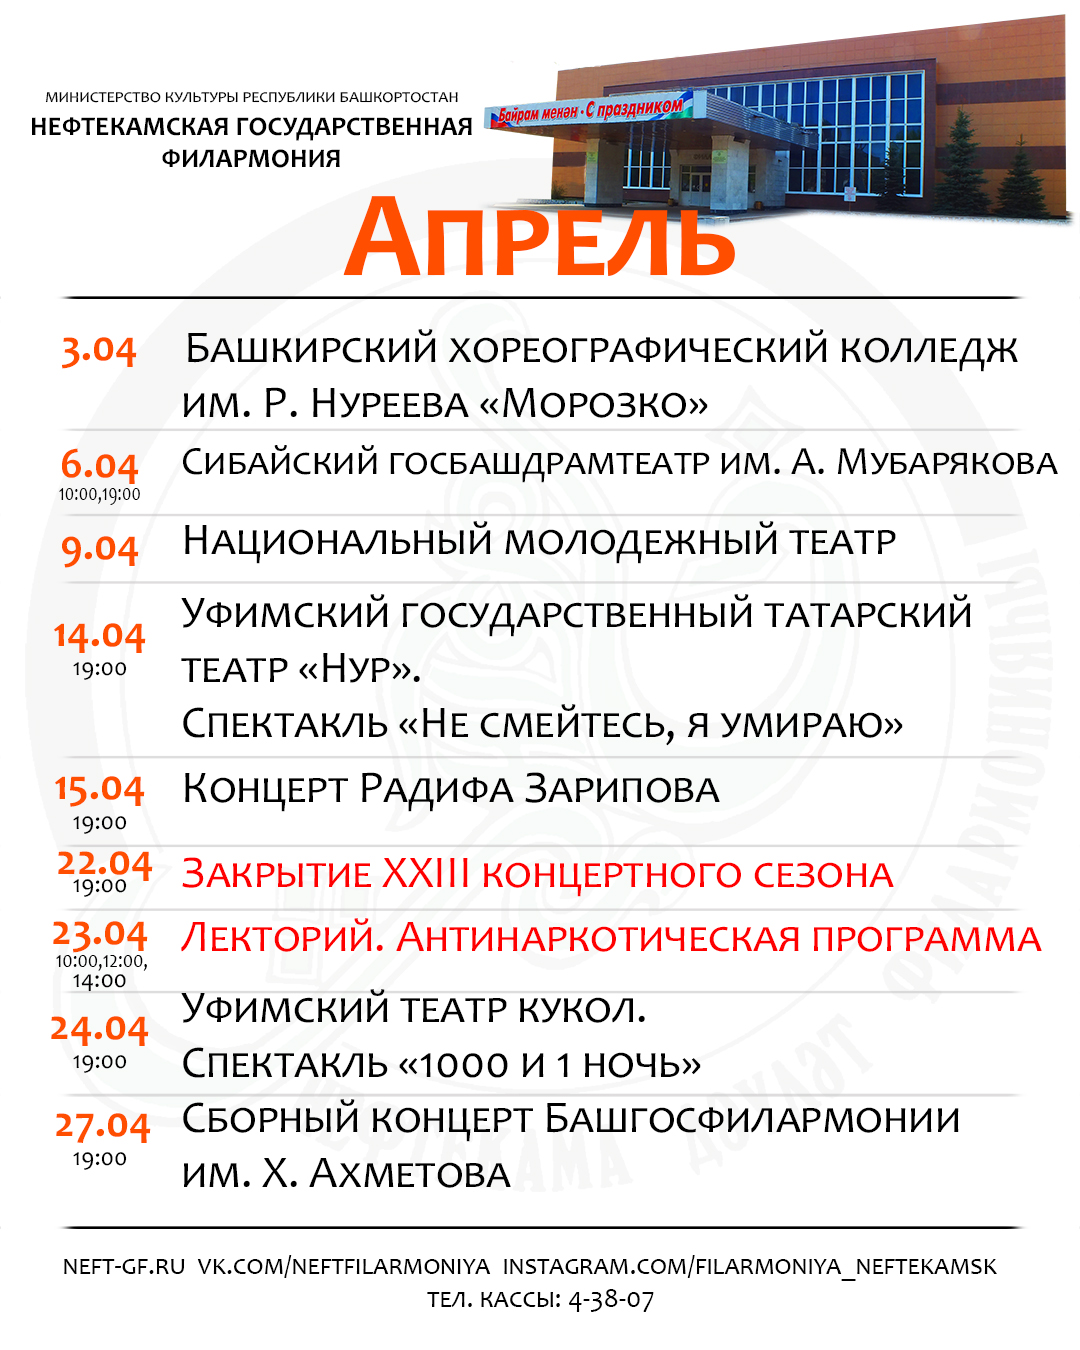 Репертуар Нефтекамской государственной филармонии на апрель 2021 г.